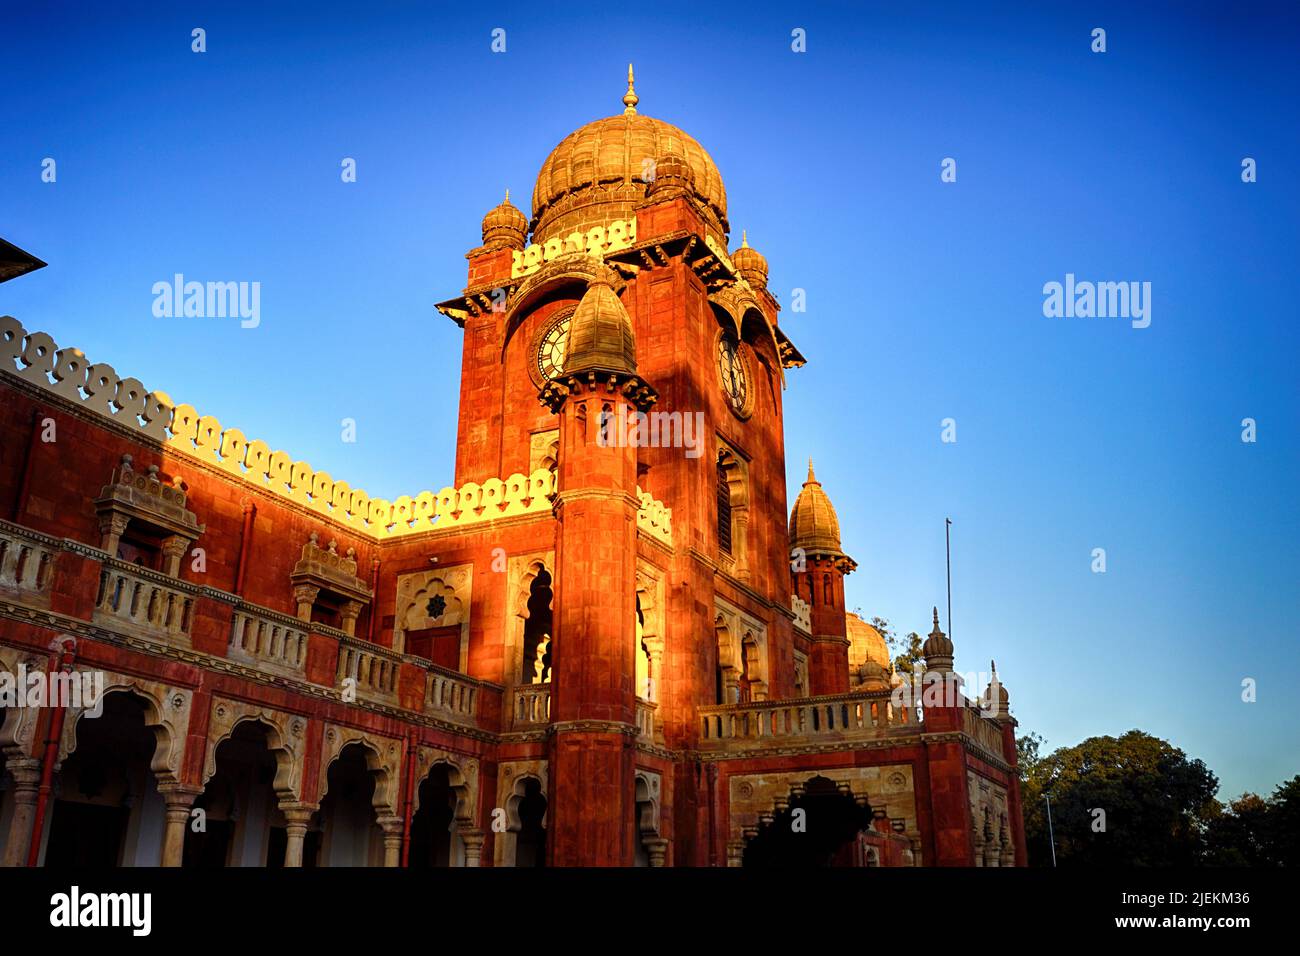 Riesige Wanduhr, Uhrturm der Mahatma Gandhi Hall. Ghanta Ghar, Indore, Madhya Pradesh. Auch bekannt als King Edward Hall. Indische Architektur. Stockfoto